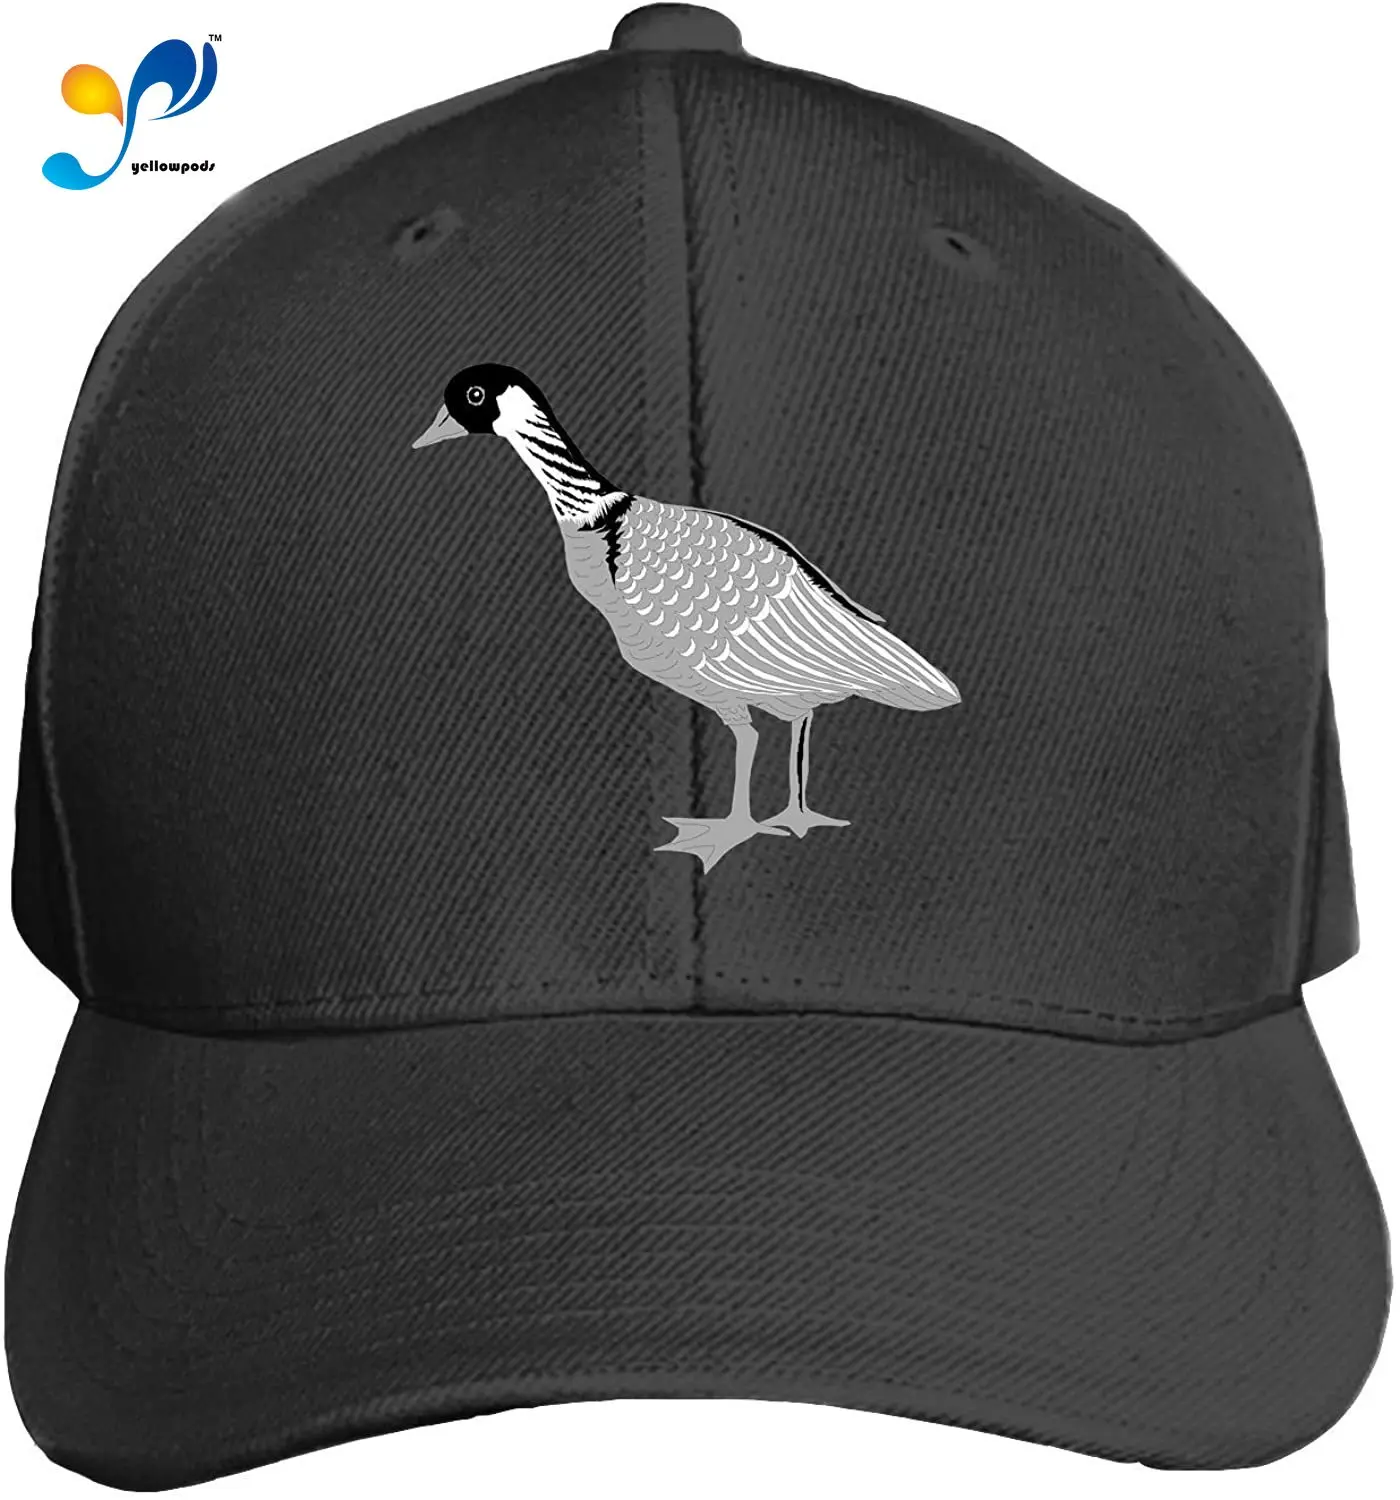 

Goose Unisex Washed Twill Baseball Cap Adjustable Peaked Sandwich Hat